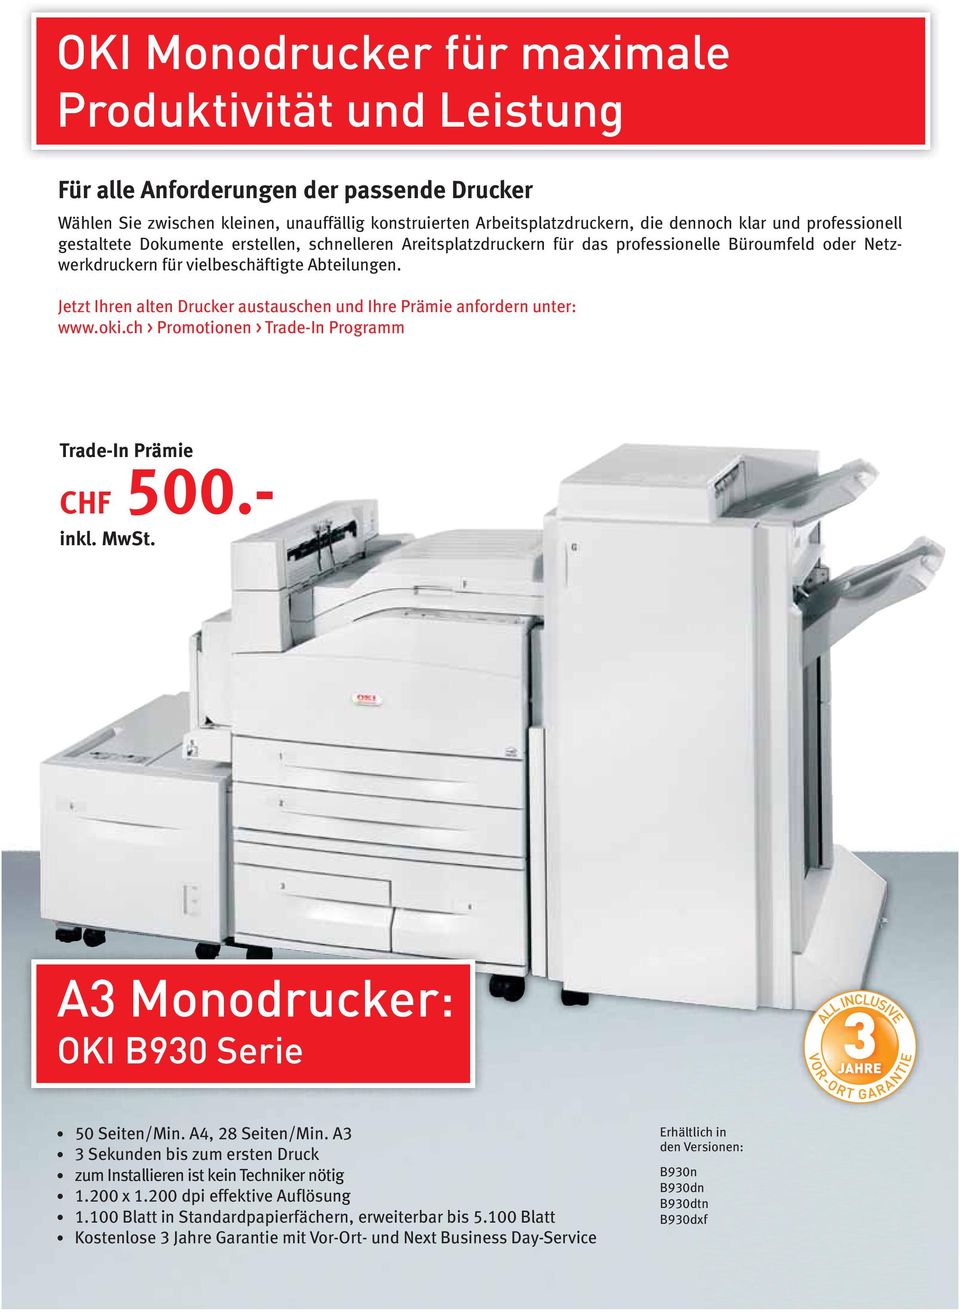 Jetzt Ihren alten Drucker austauschen und Ihre Prämie anfordern unter: www.oki.ch > Promotionen > Trade-In Programm CHF 500.- 50 Seiten/Min. A4, 28 Seiten/Min.